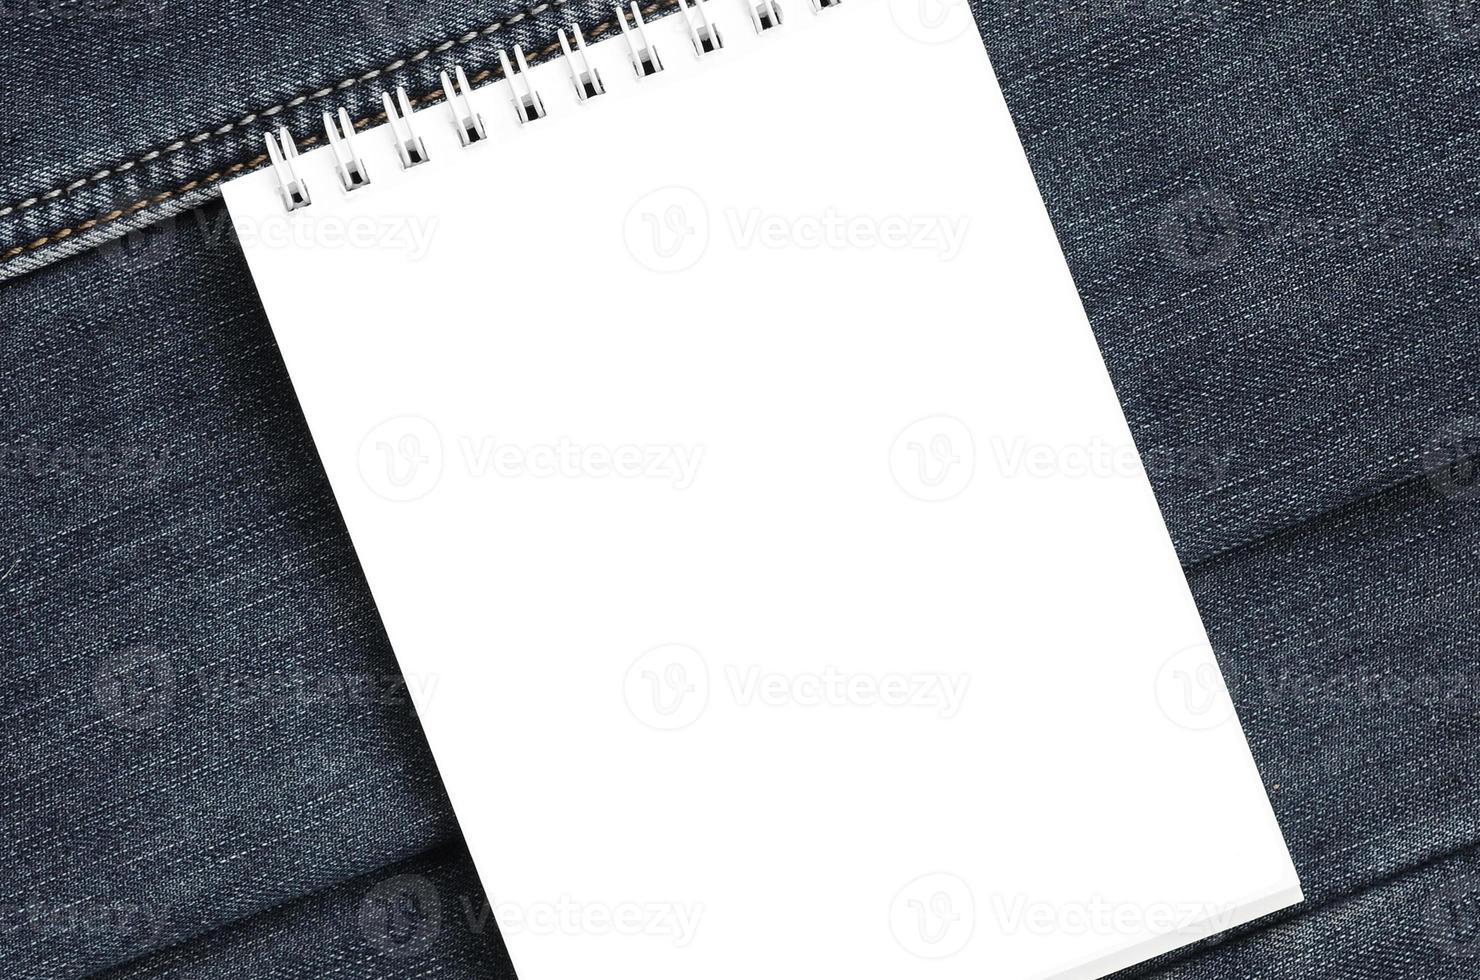 wit notitieboekje met schoon Pagina's aan het liegen Aan donker blauw jeans achtergrond. beeld met kopiëren ruimte foto